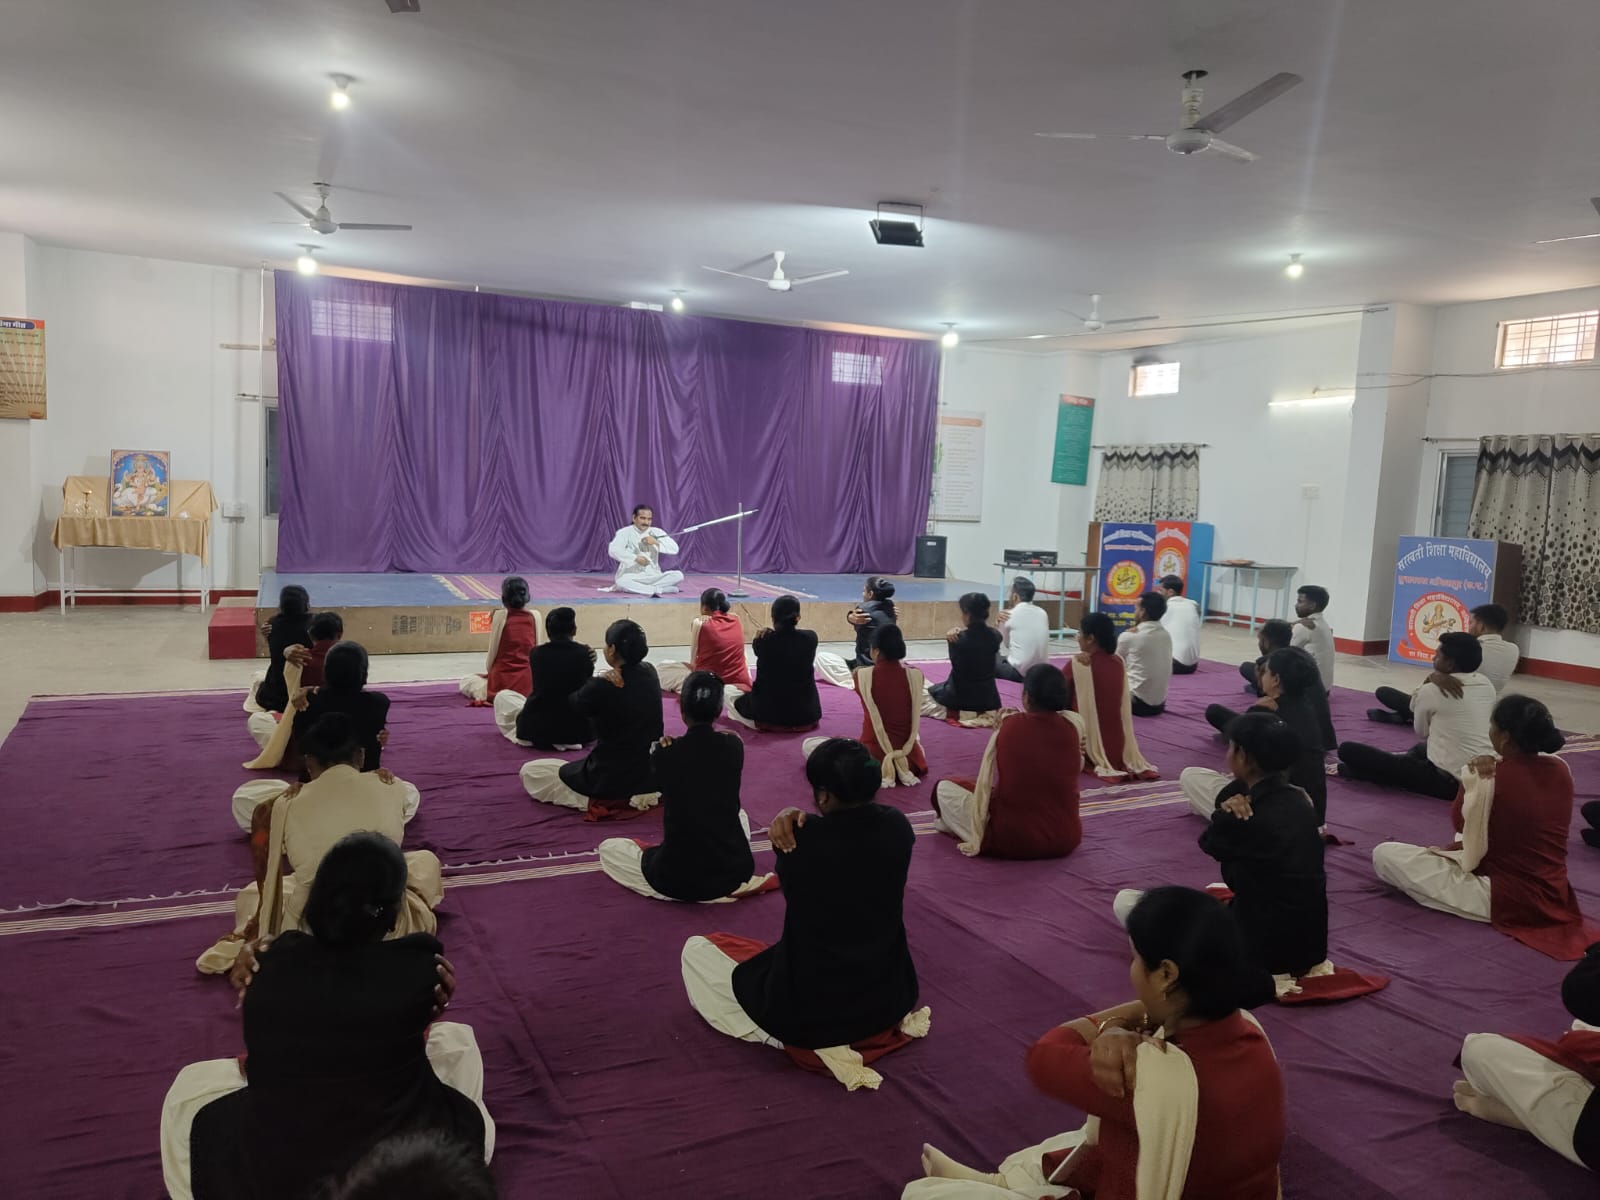 सरस्वती शिक्षा महाविद्यालय सुभाषनगर ,अंबिकापुर में 15 दिवसीय मूल्य वर्धित पाठ्यक्रम के अंतर्गत योग शिक्षा पाठ्यक्रम का आयोजन किया जा रहा है।